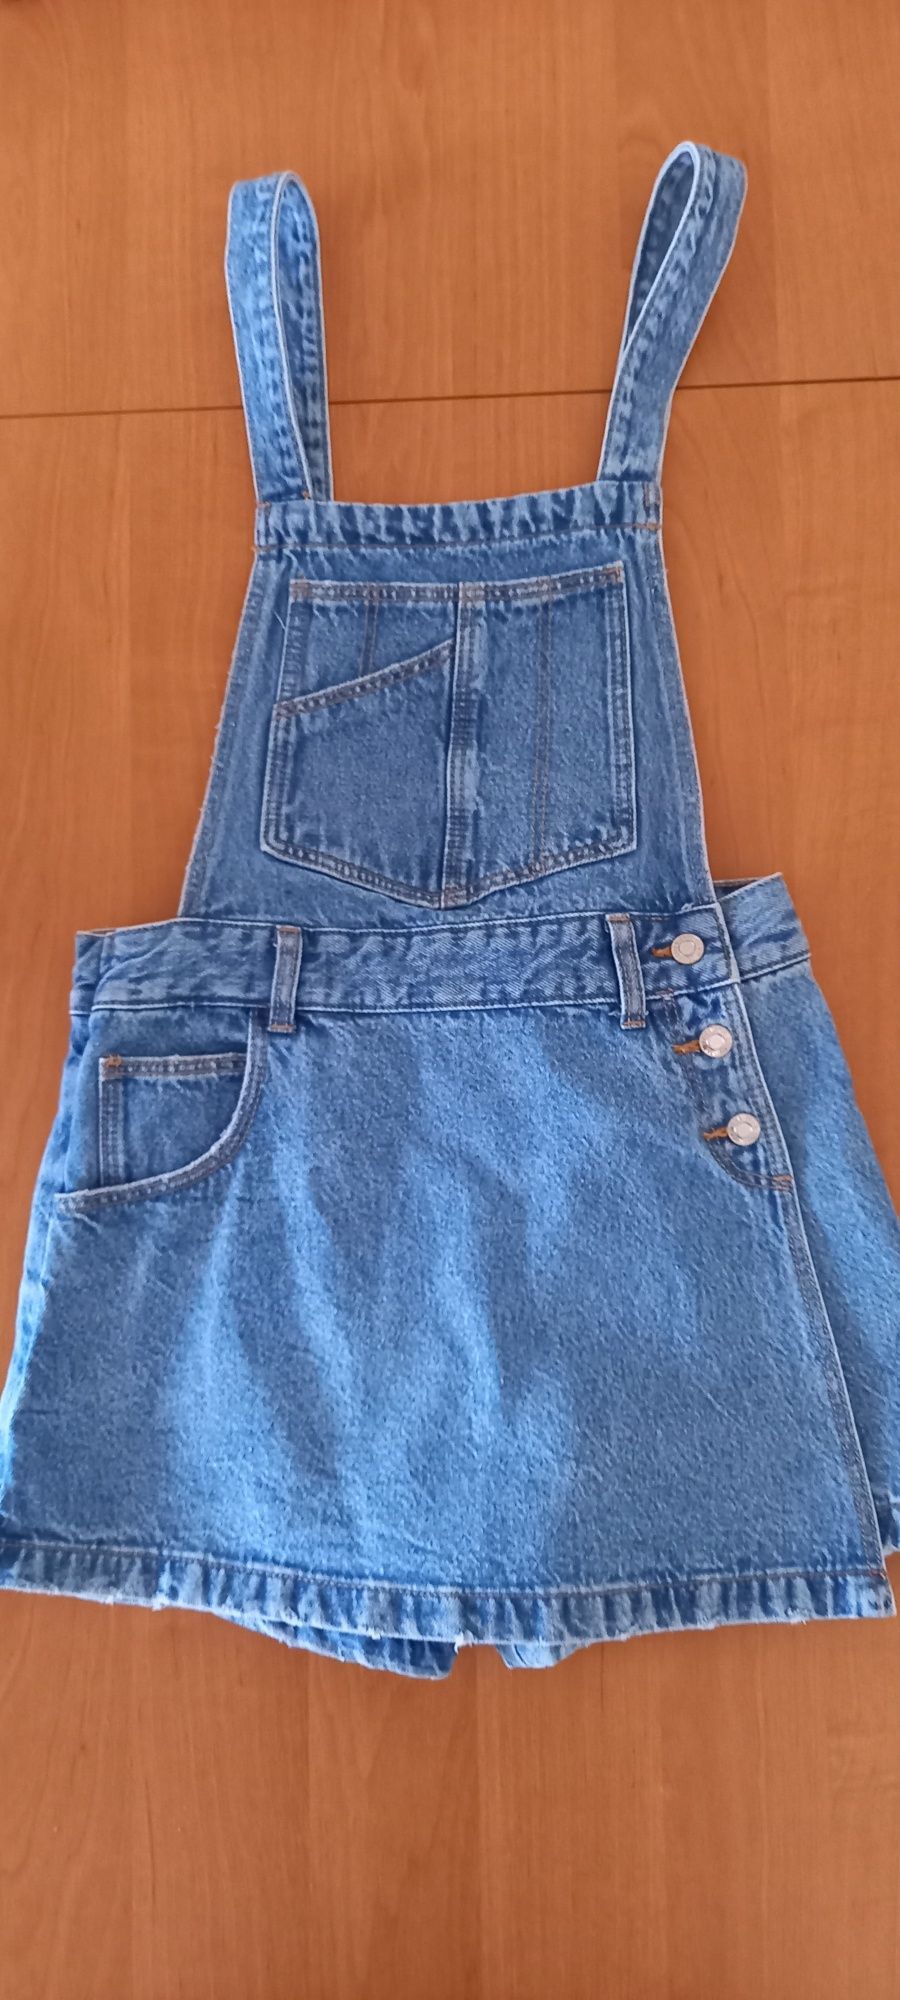 Spodnicospodnie jeansowe dziewczęce ZARA rozmiar 152